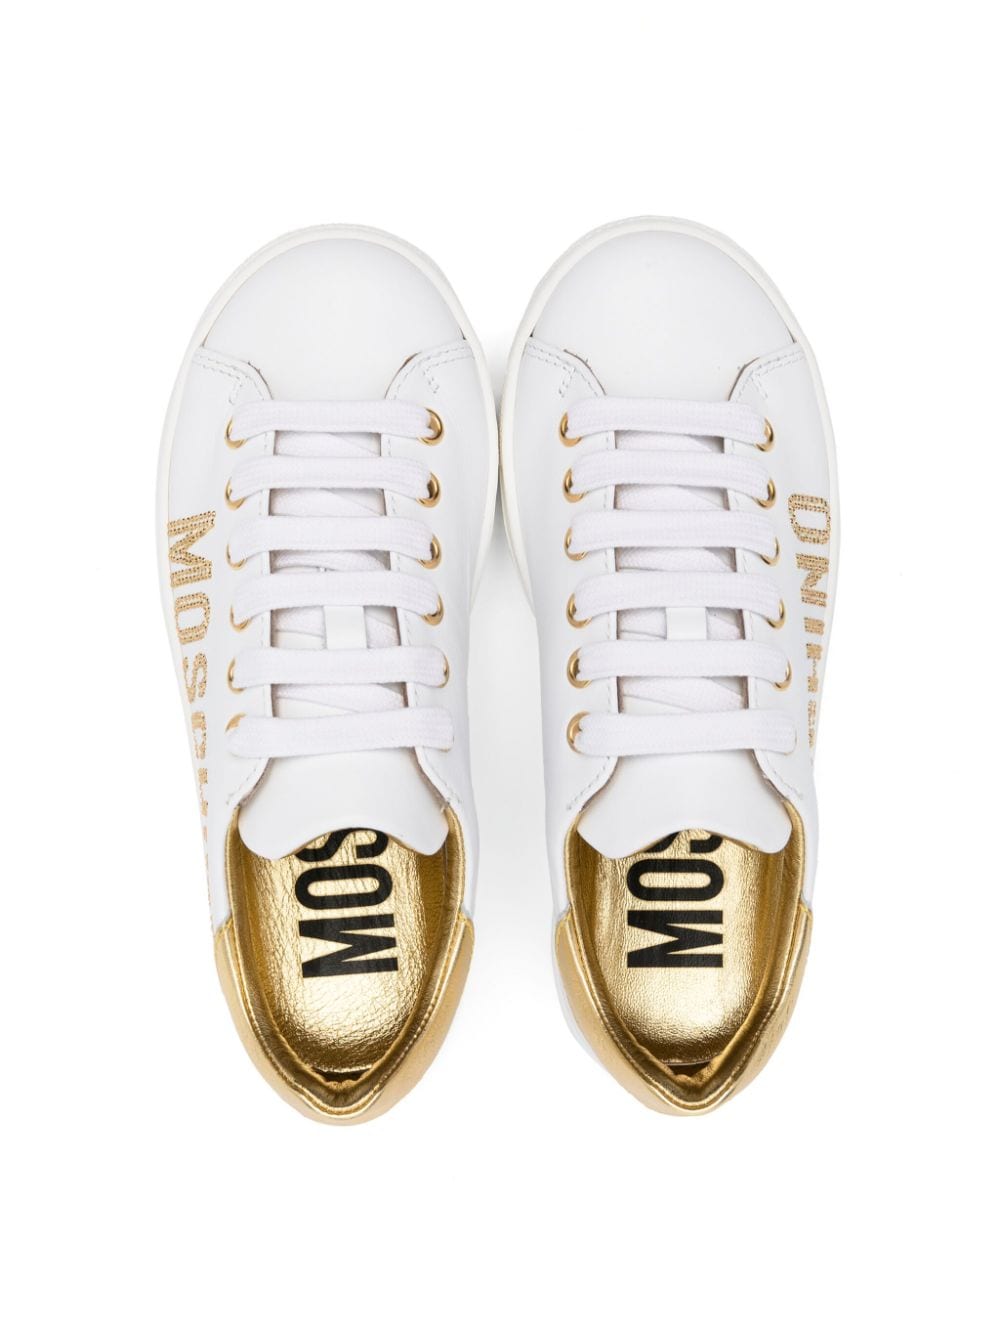 Sneakers con dettagli in oro - Rubino Kids